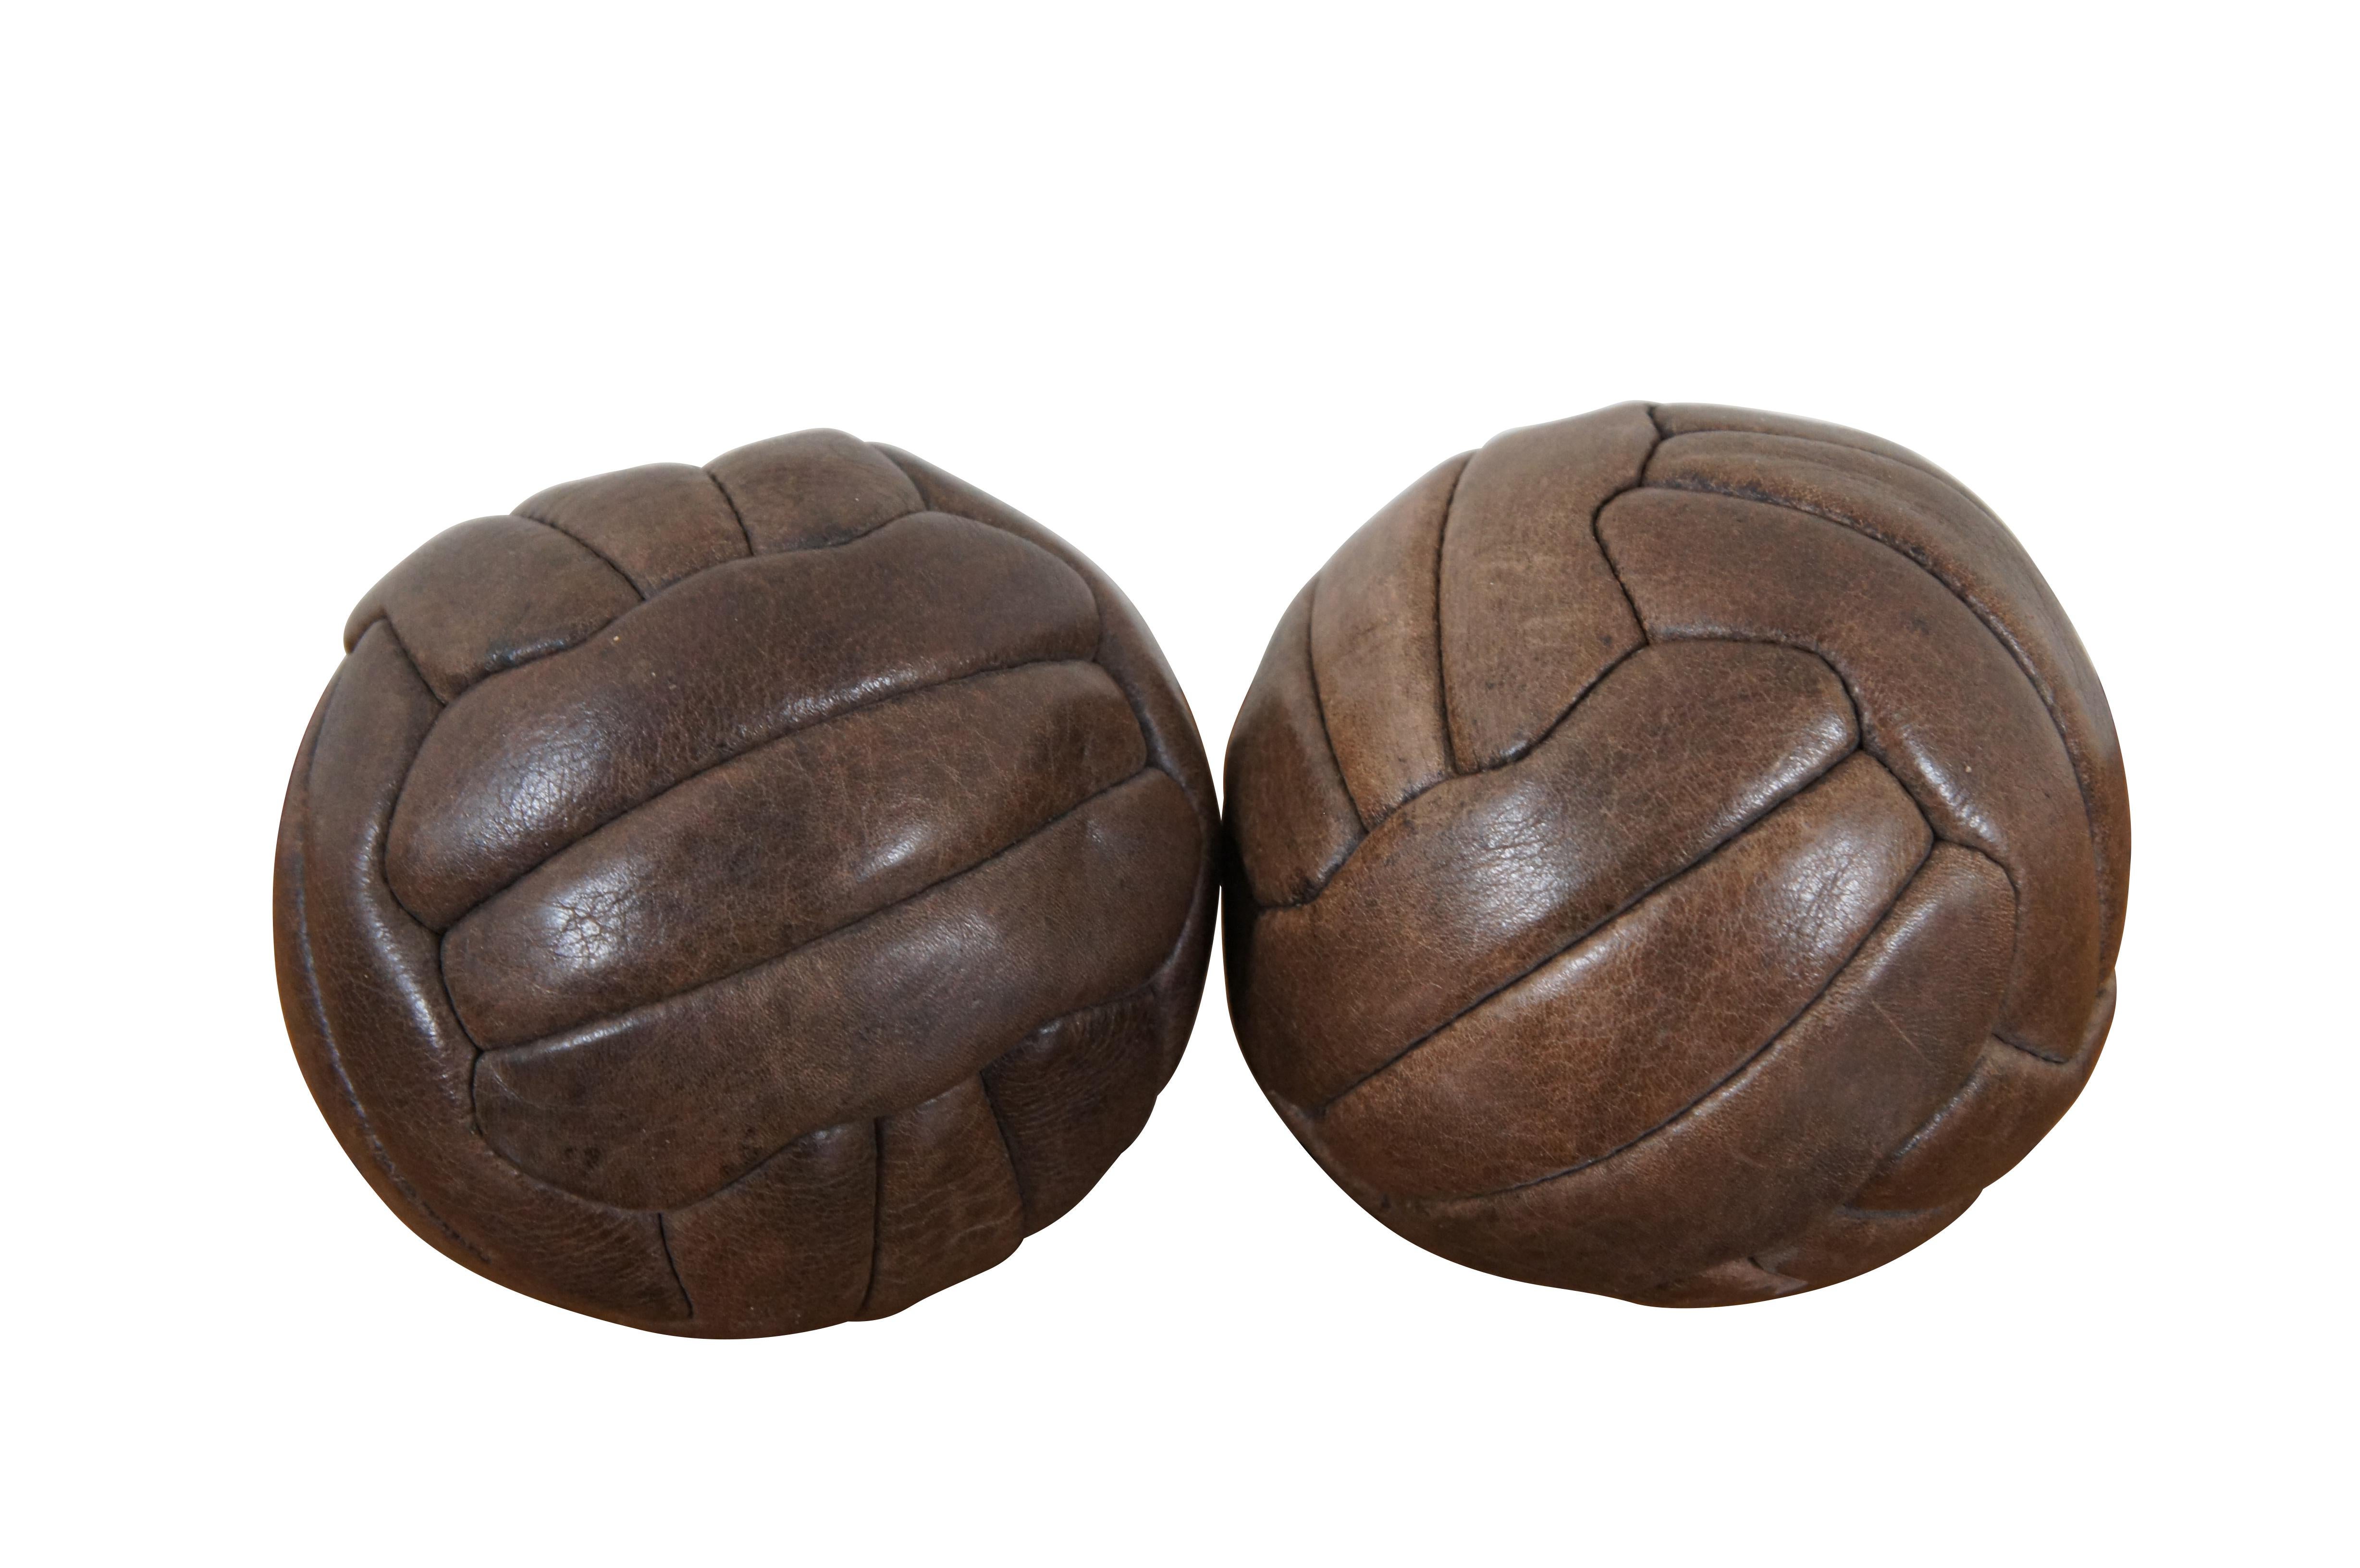 Paire de ballons de football en cuir marron datant des années 1930, fabriqués par la société Mark Cross. Fabriqué en Angleterre.

Dimensions :
5.5